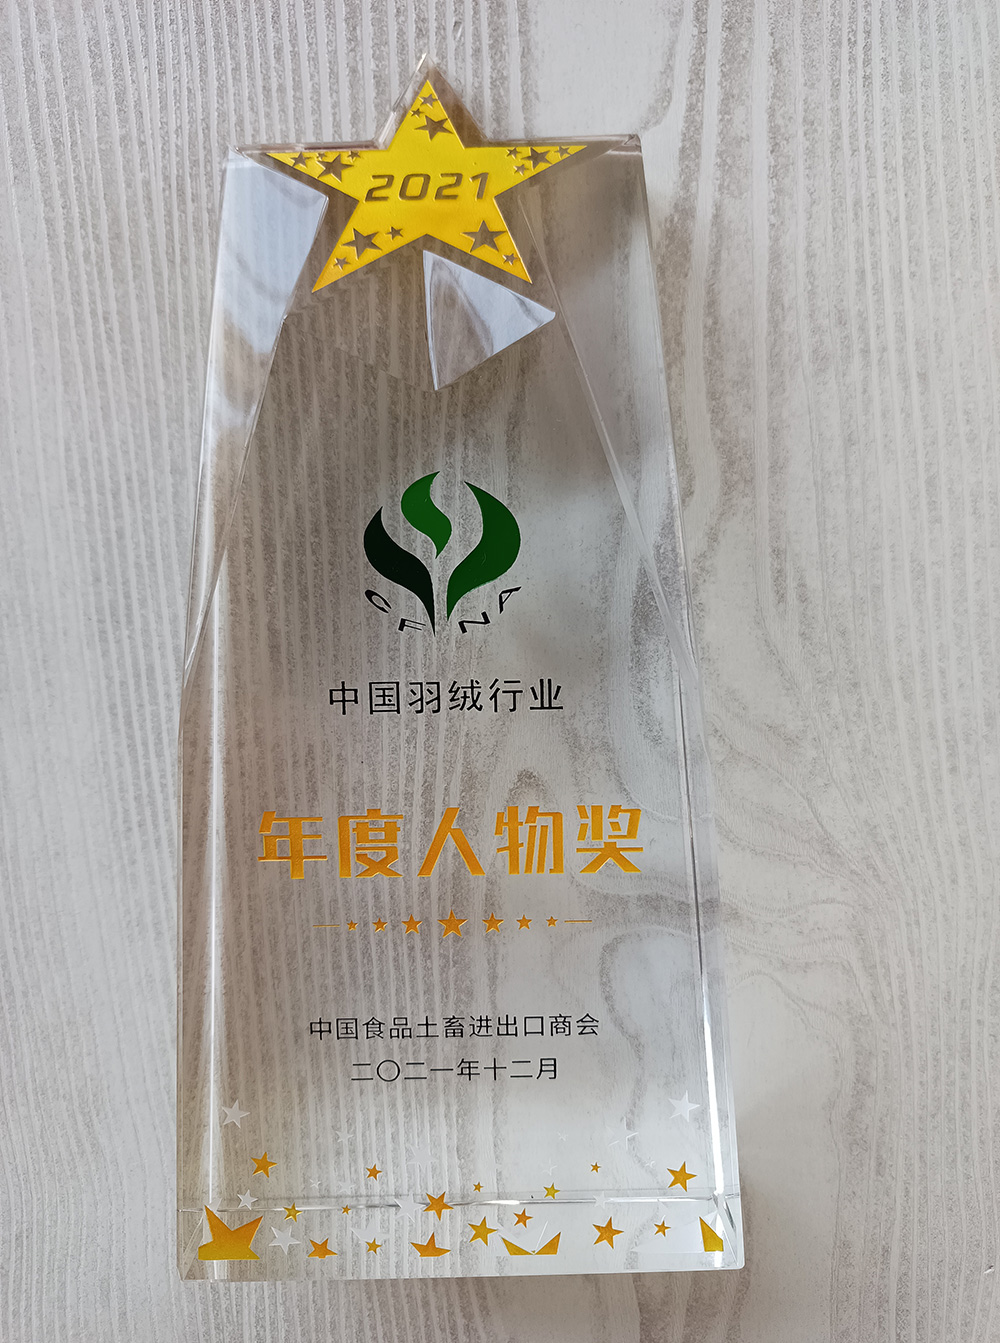 中国羽绒行业年度人物奖